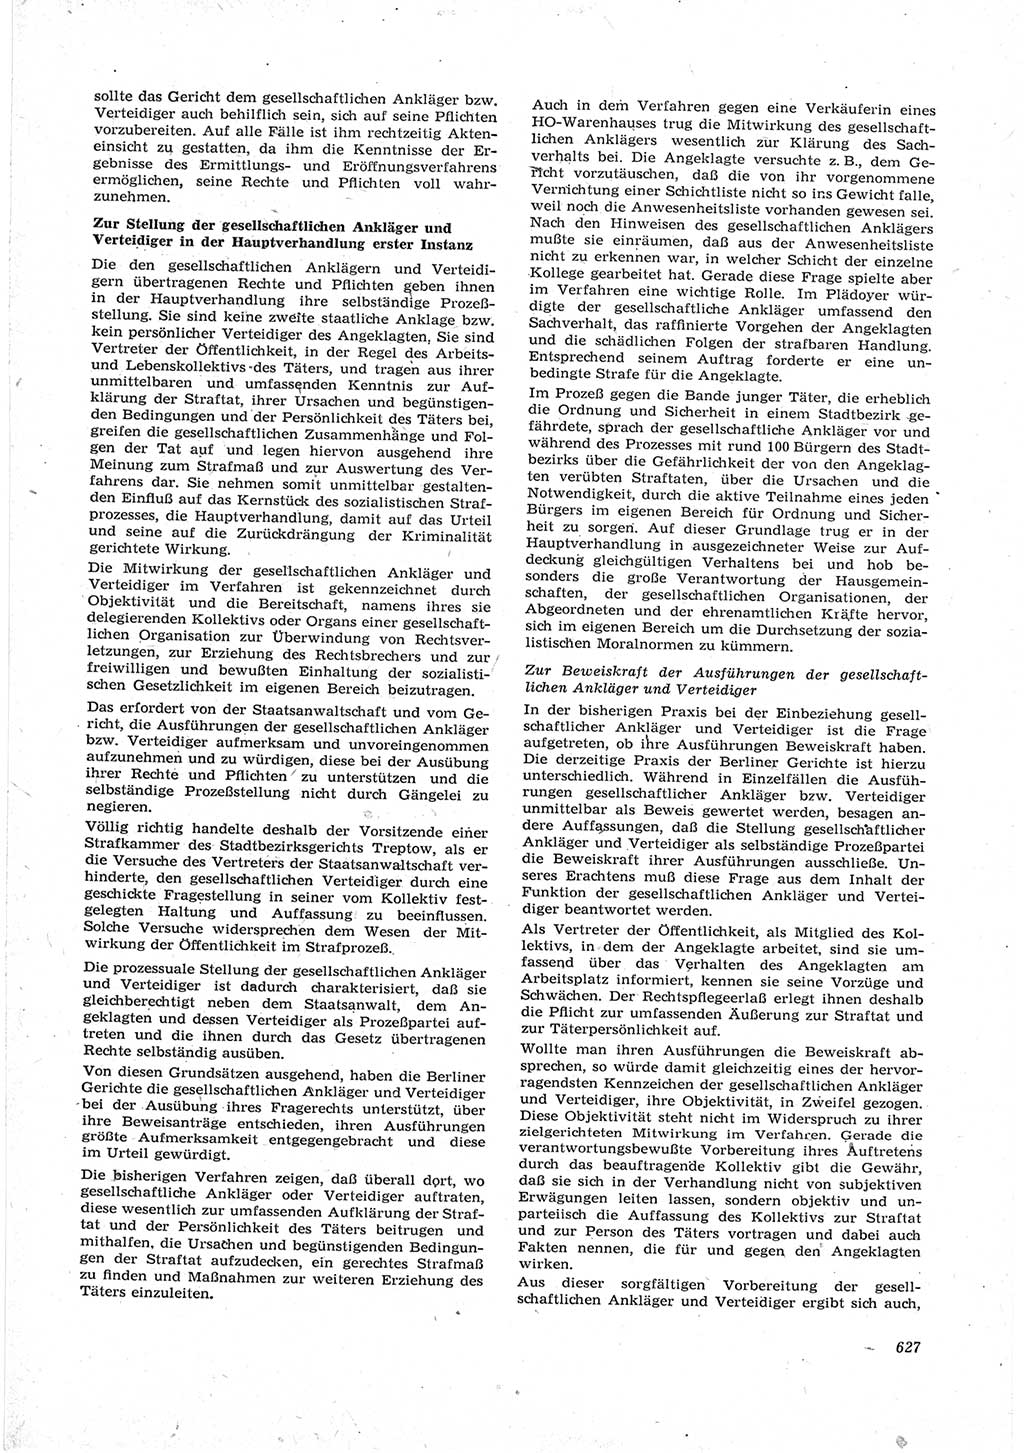 Neue Justiz (NJ), Zeitschrift für Recht und Rechtswissenschaft [Deutsche Demokratische Republik (DDR)], 17. Jahrgang 1963, Seite 627 (NJ DDR 1963, S. 627)